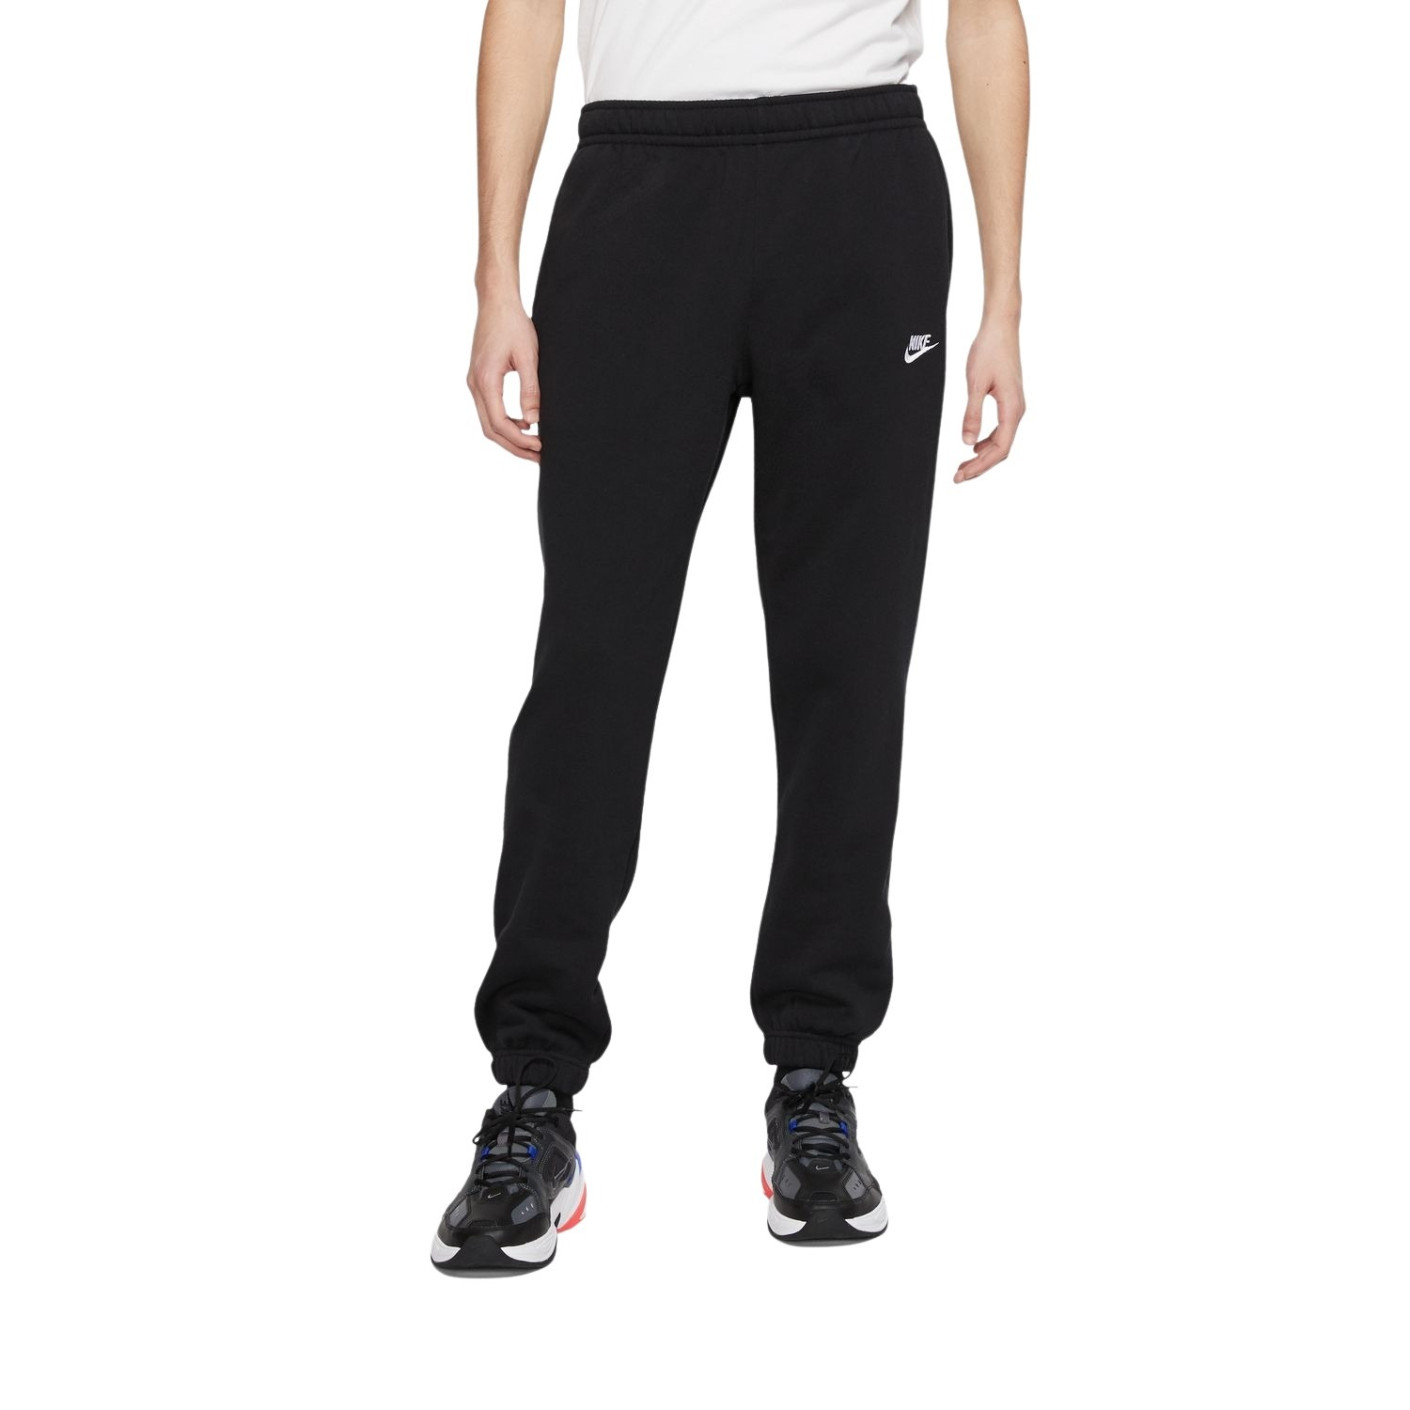 Nike Sportswear Club Fleece Joggingbroek Zwart Wit